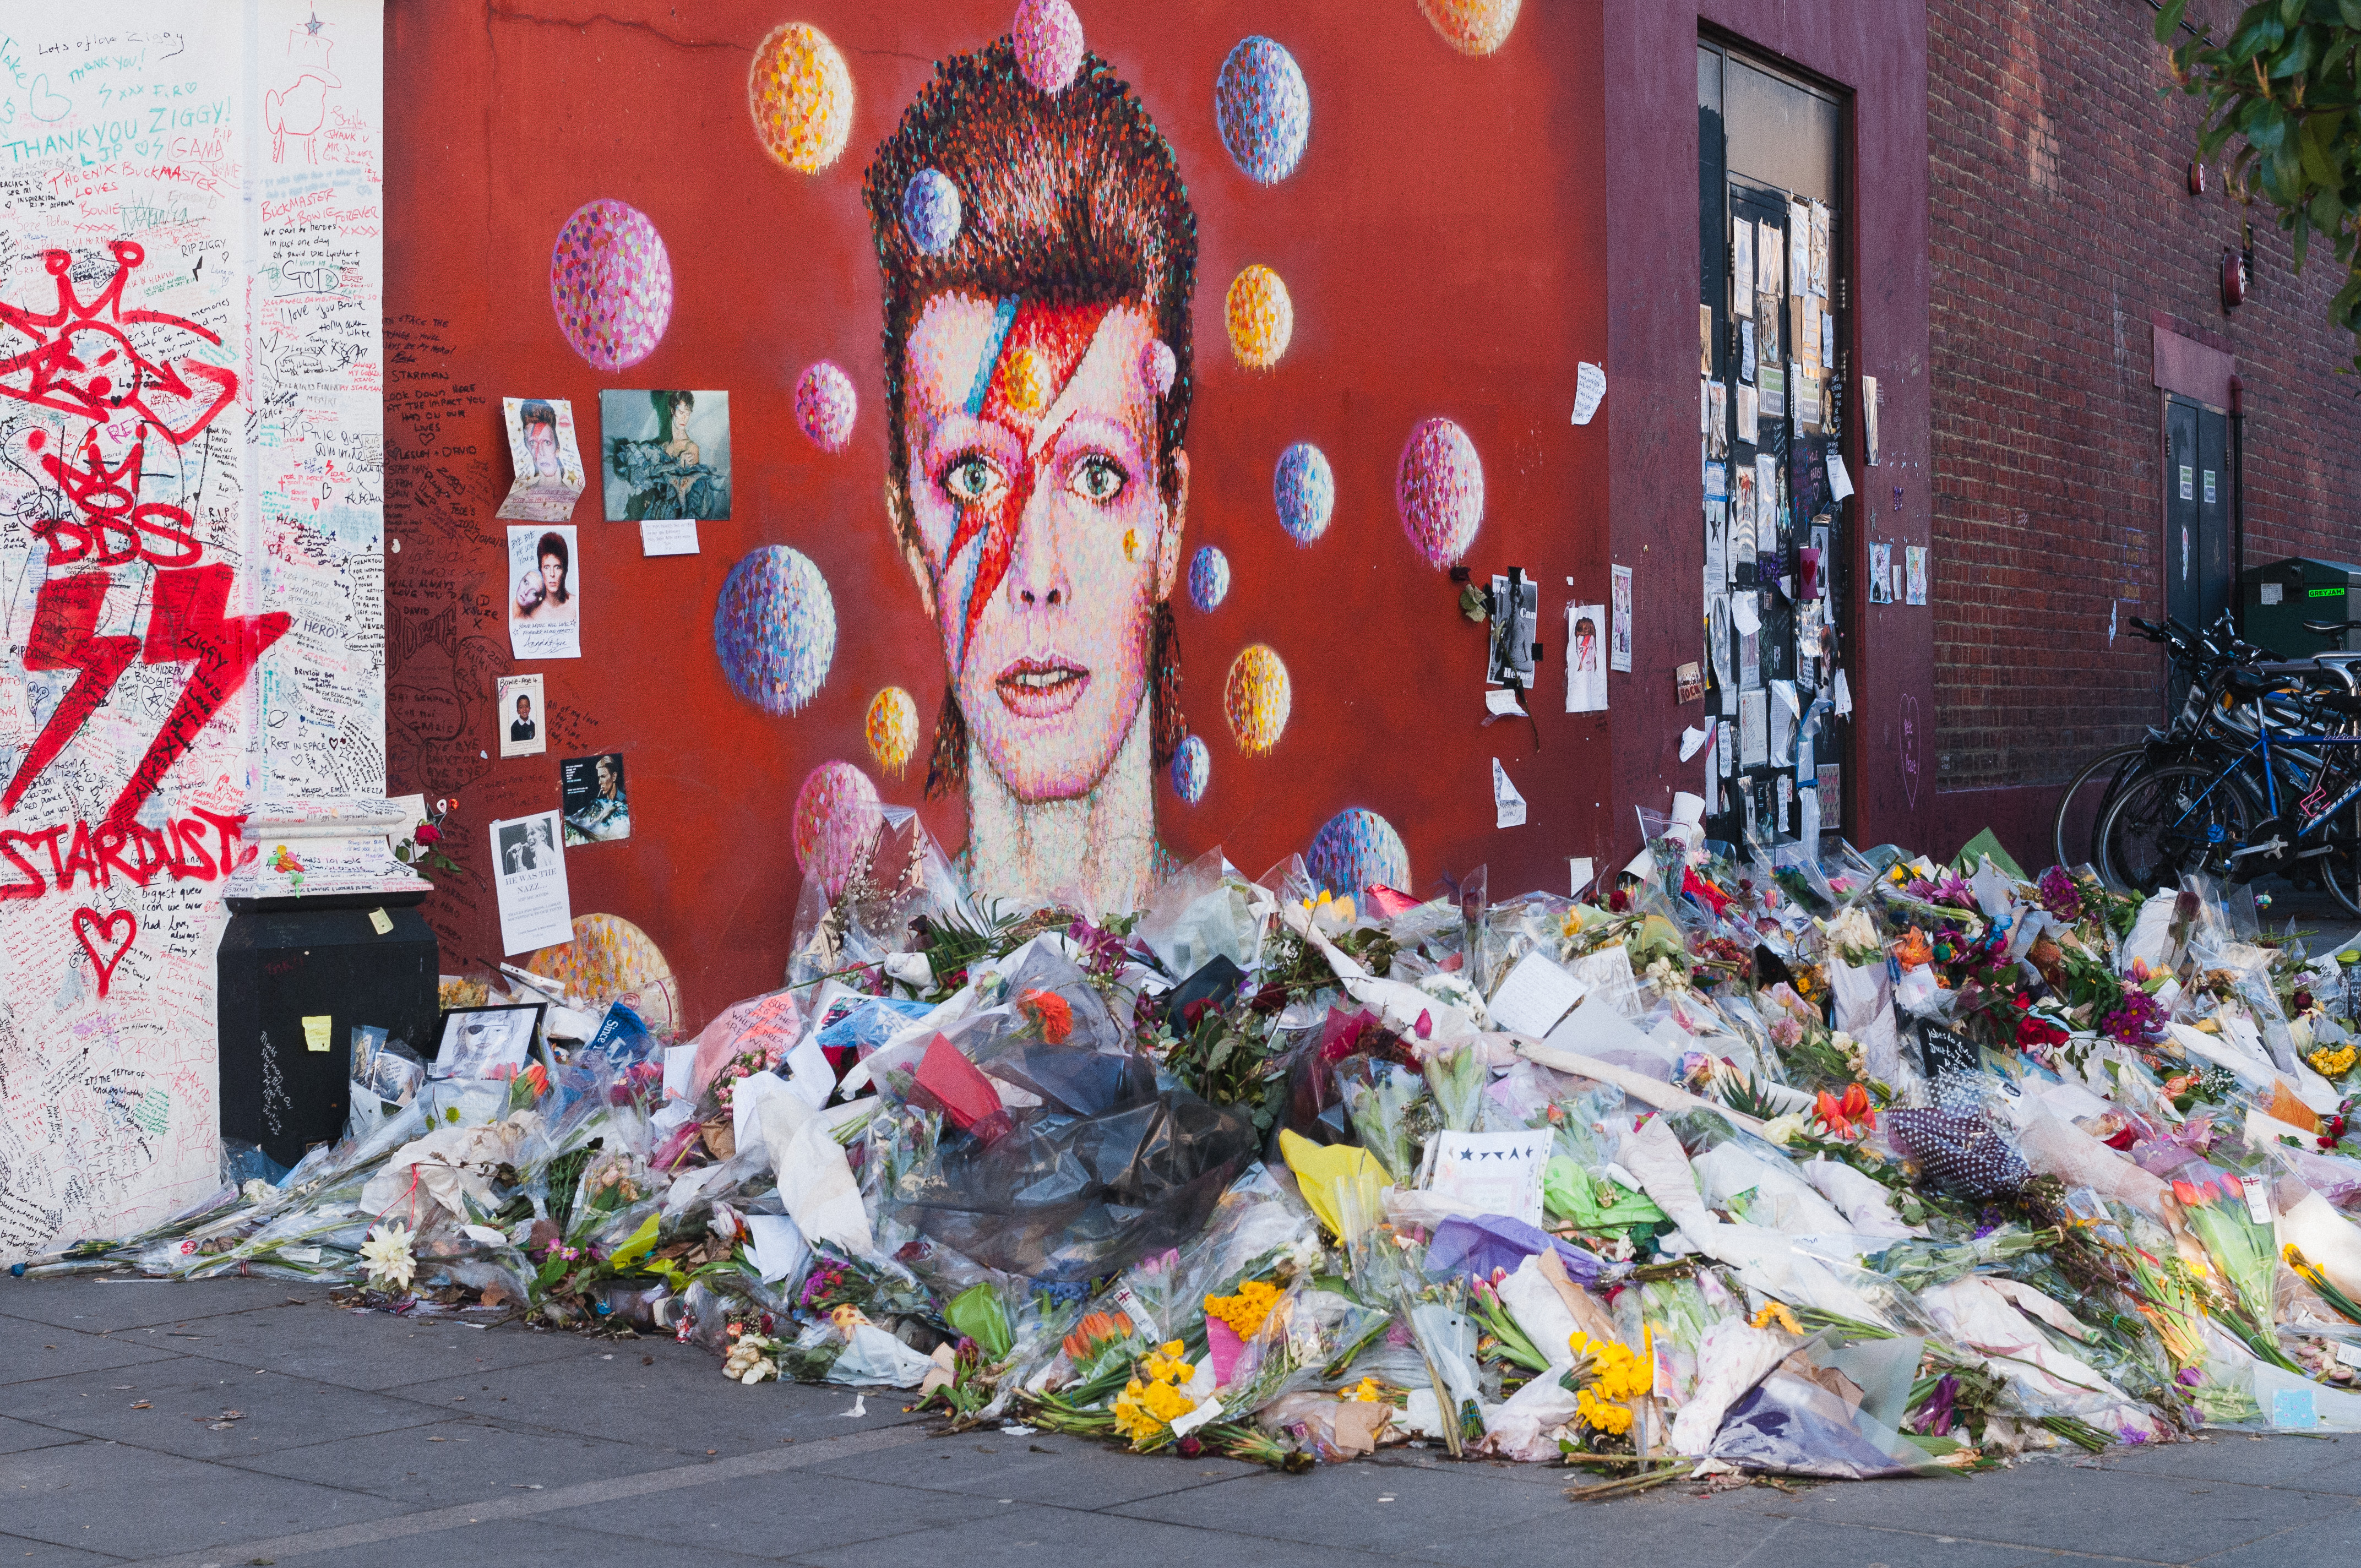 O David Bowie Memorial, com as flores, cartas e outras homenagens dos fãs. Crédito: